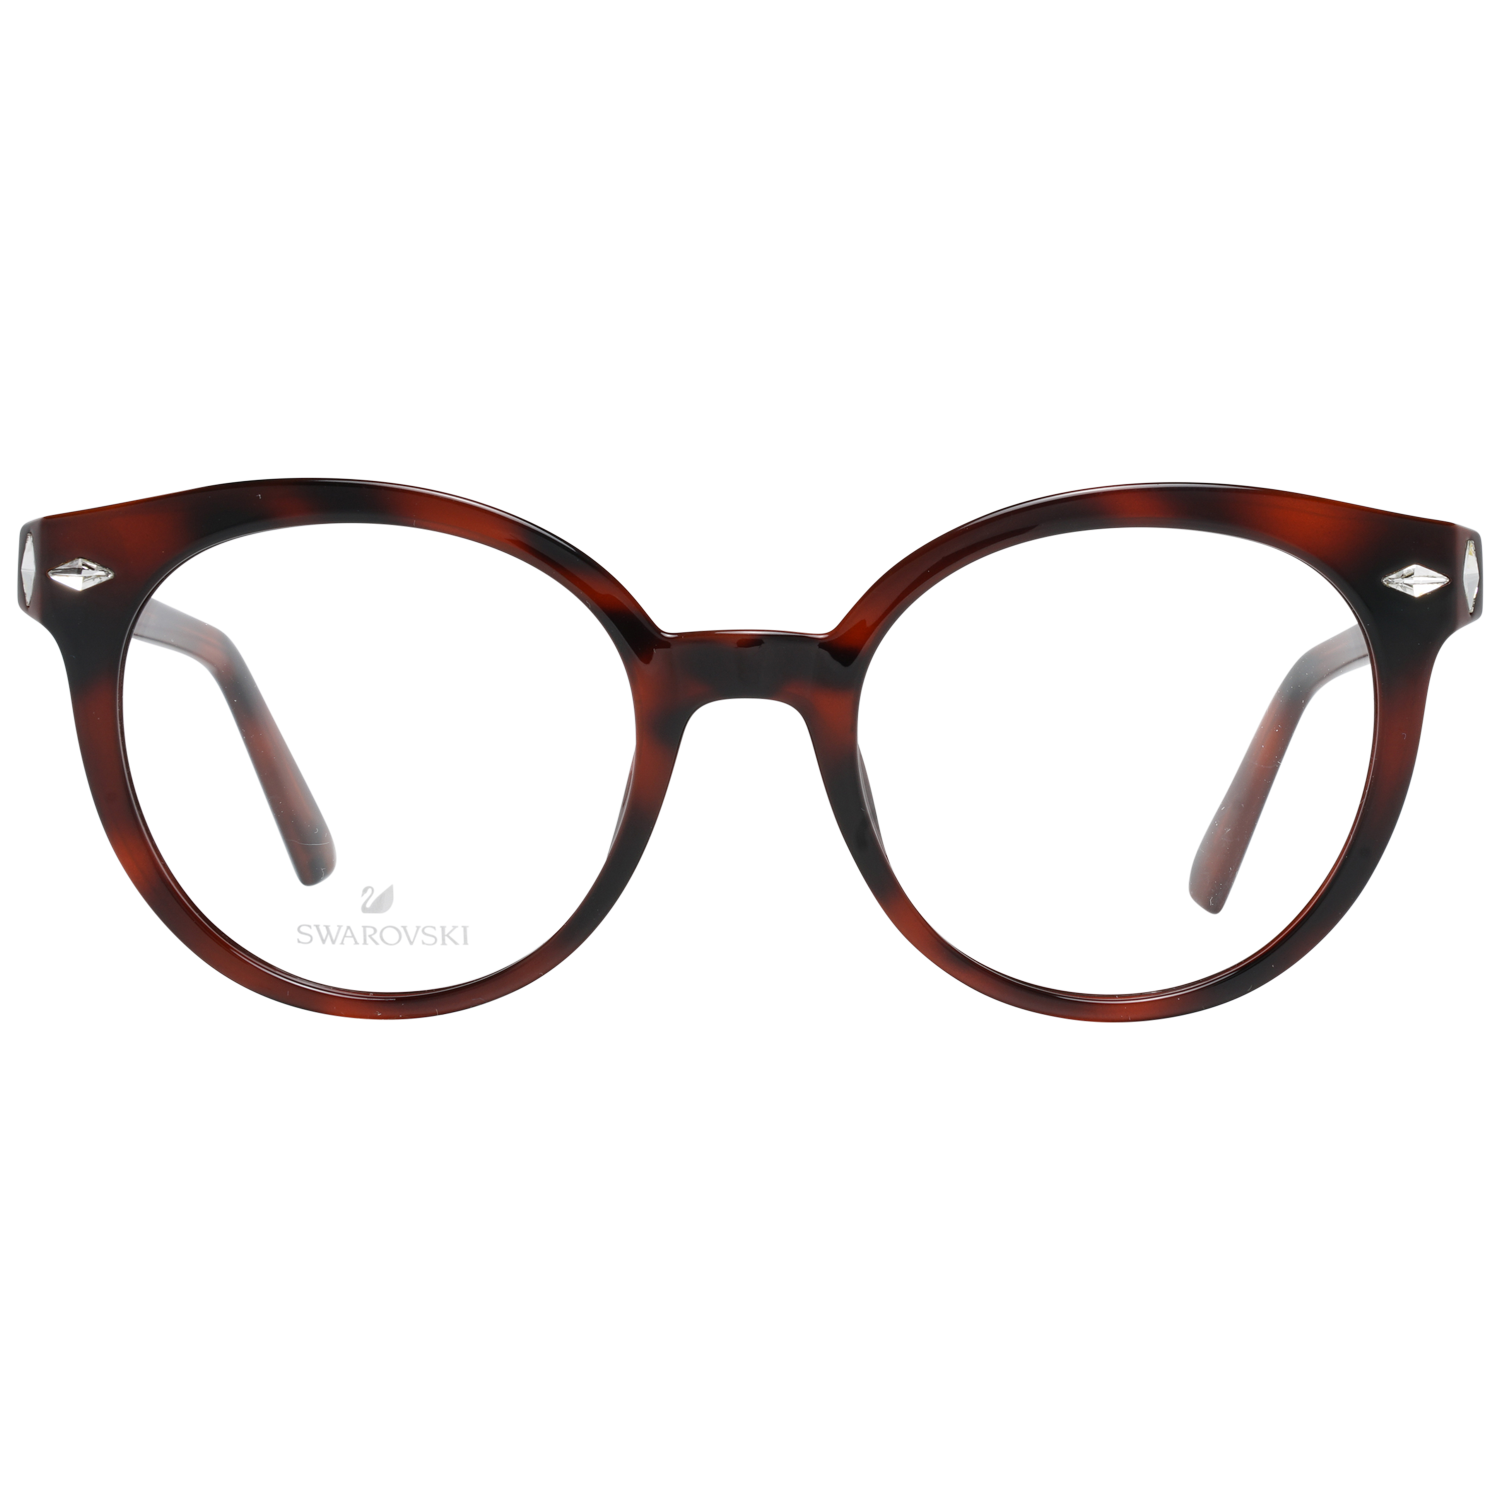 Swarovski Frames Swarovski Women Glasses Optical Frame SK5272 052 50 Eyeglasses Eyewear UK USA Australia 